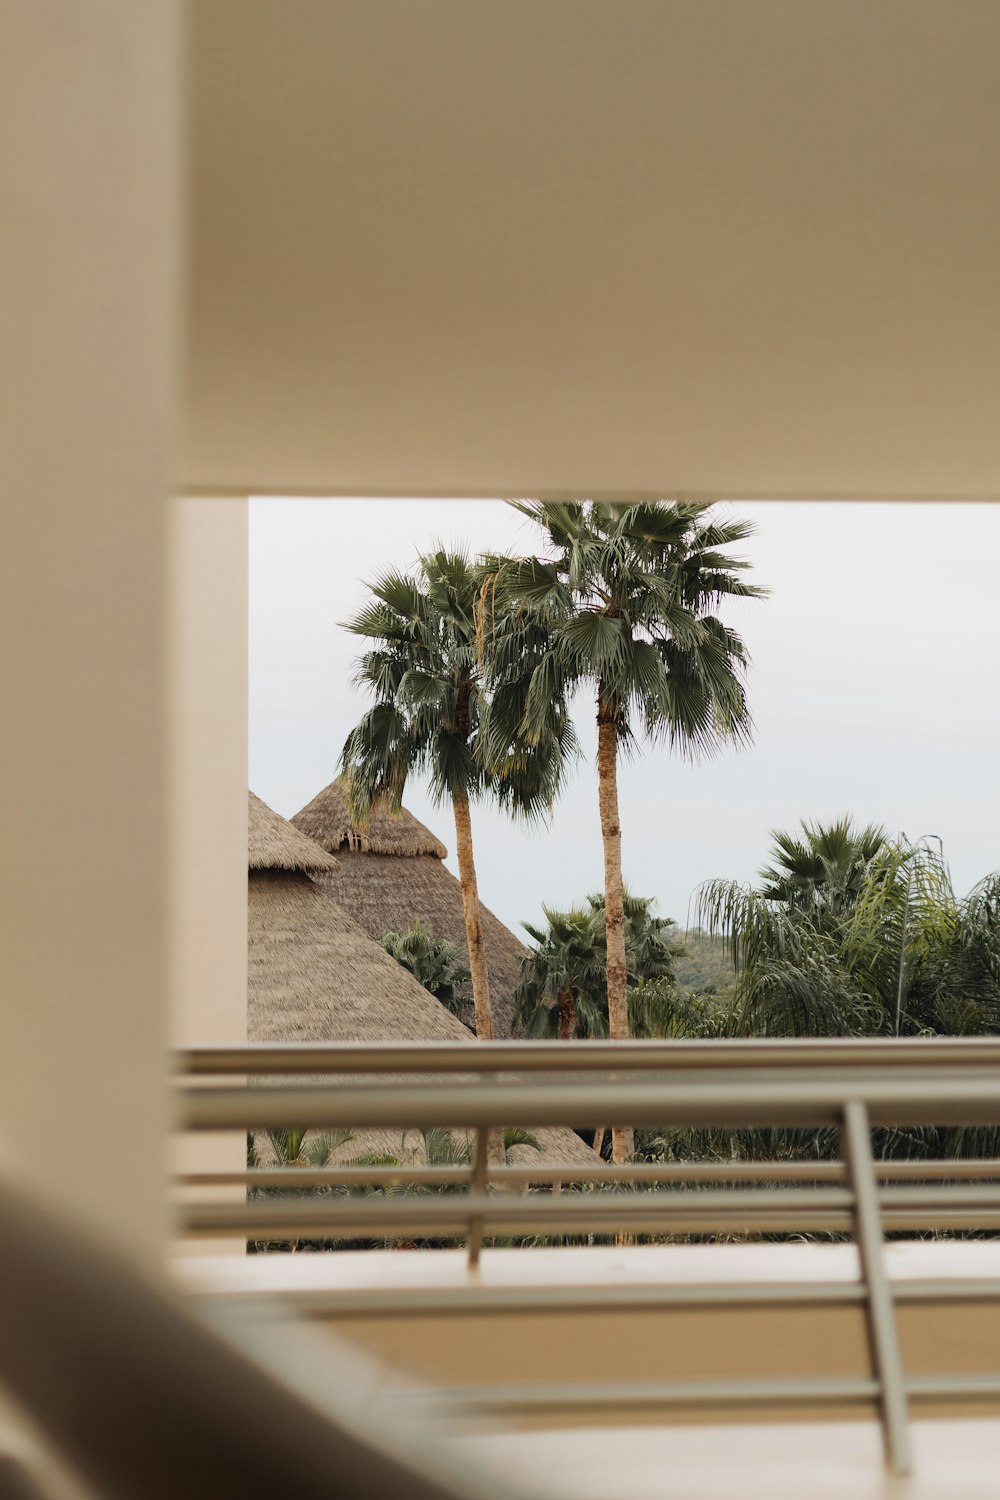 Eine Palme ist durch ein Fenster zu sehen